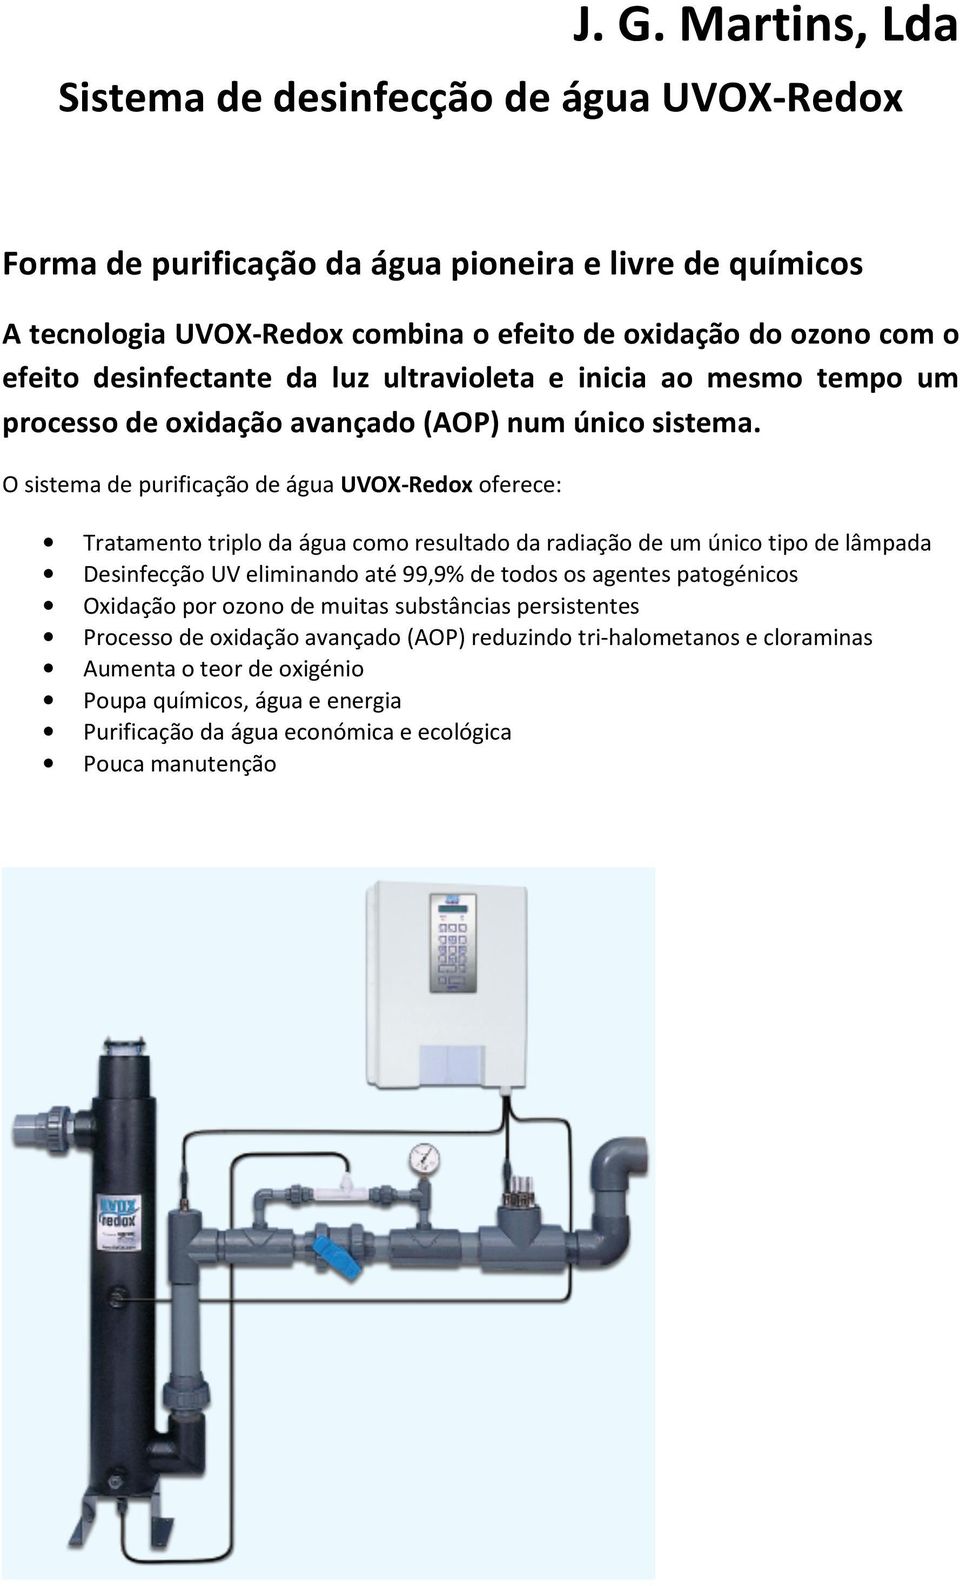 O sistema de purificação de água UVOX-Redox oferece: Tratamento triplo da água como resultado da radiação de um único tipo de lâmpada Desinfecção UV eliminando até 99,9% de todos os